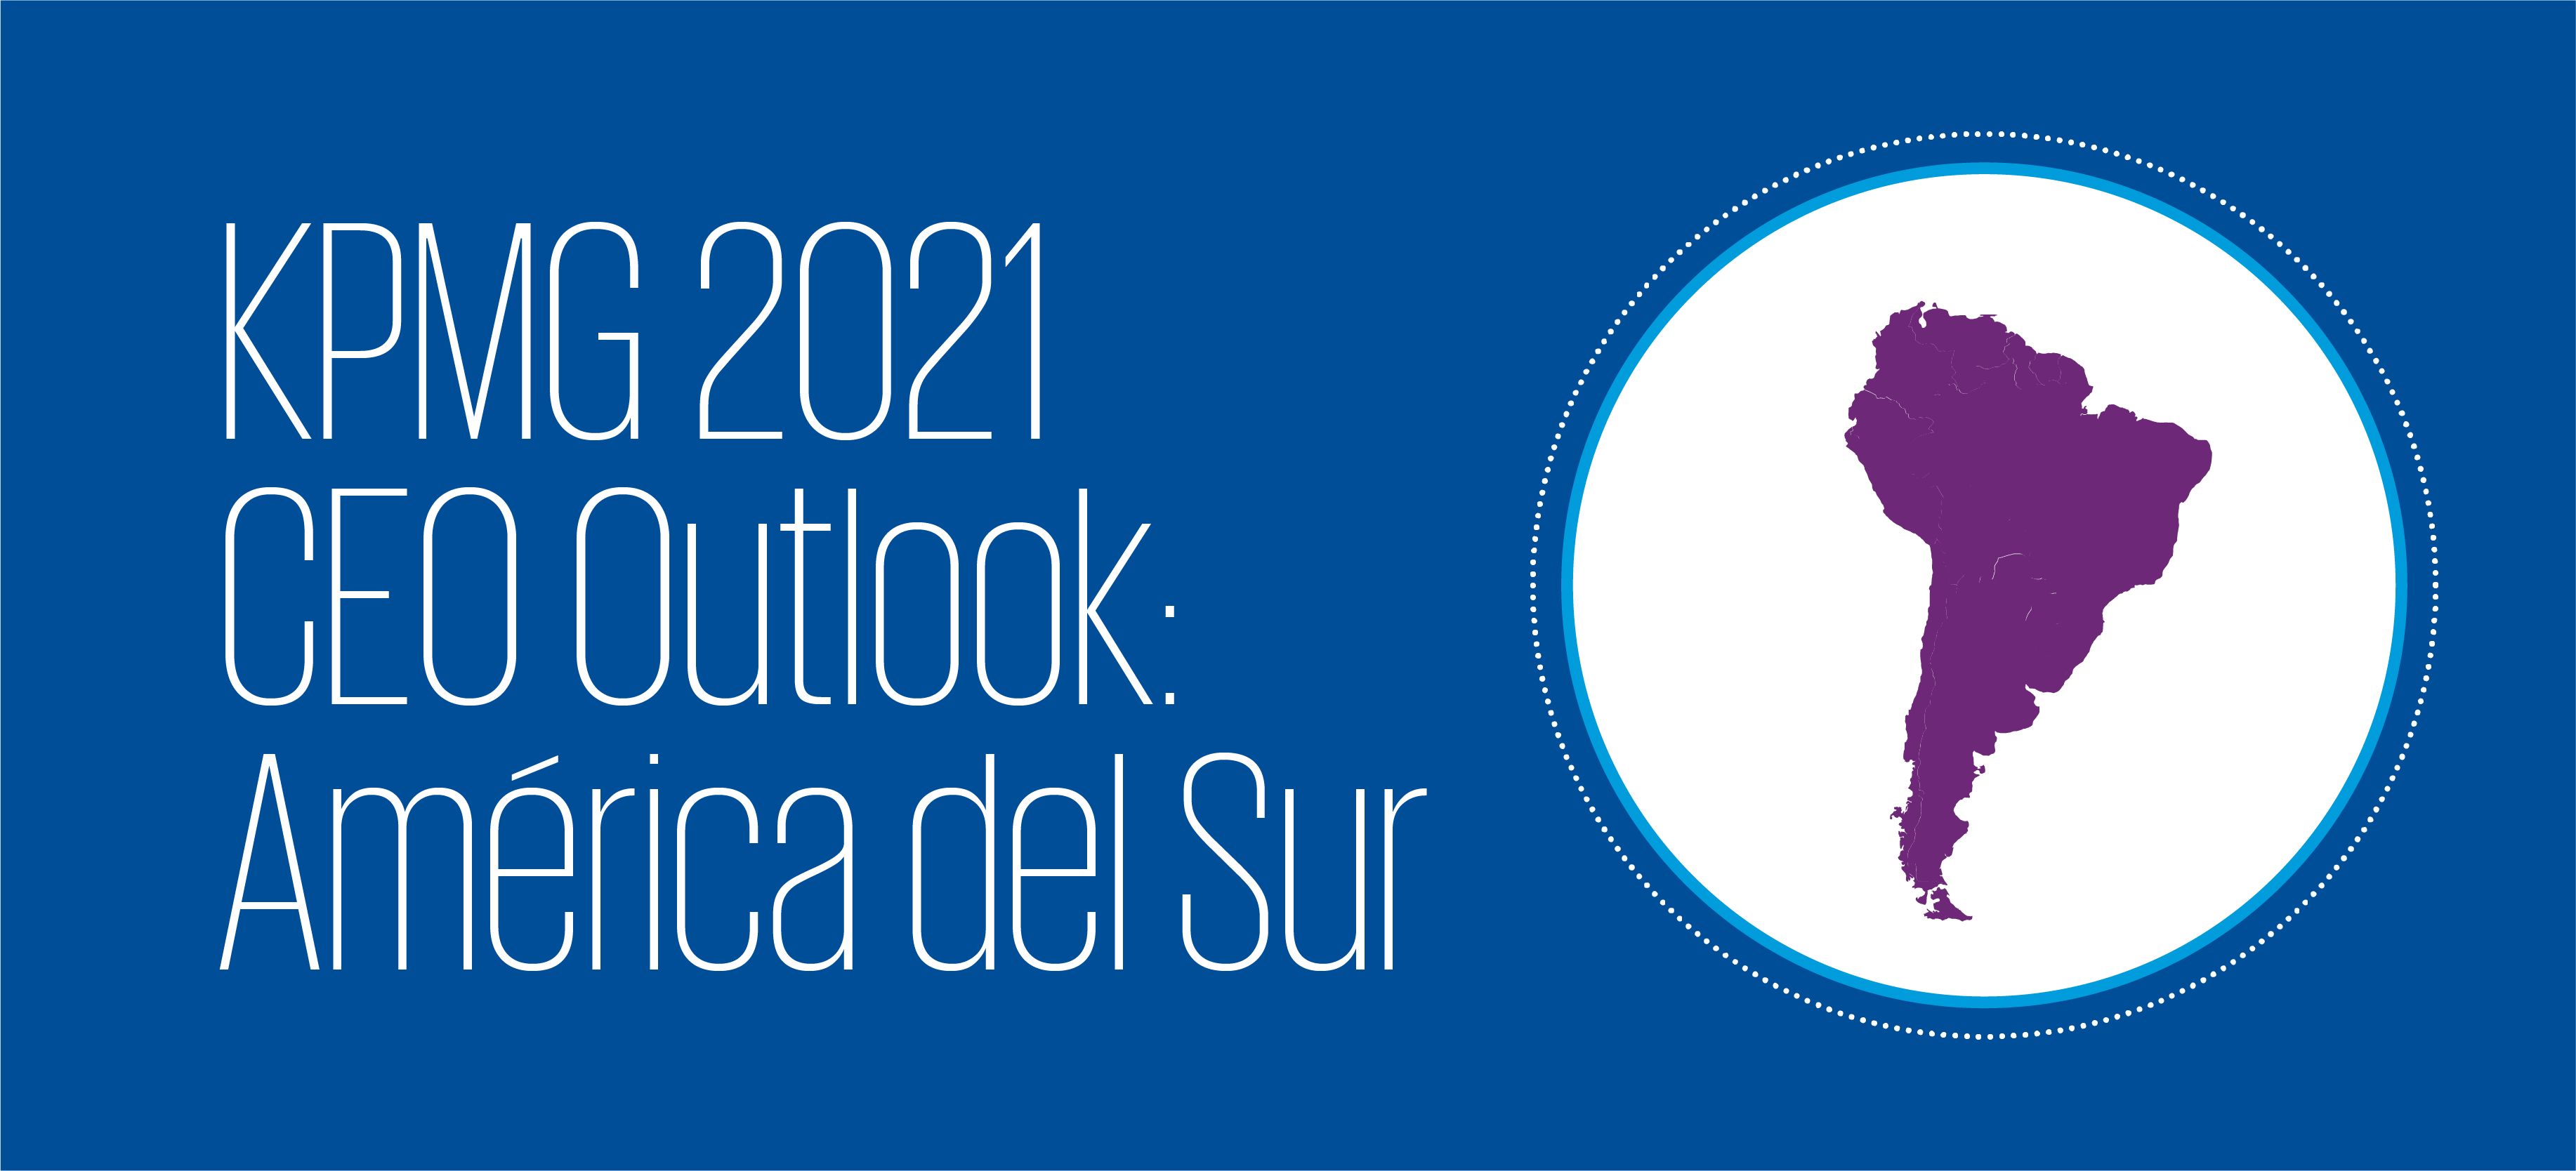 KPMG 2021 CEO Outlook: América del Sur